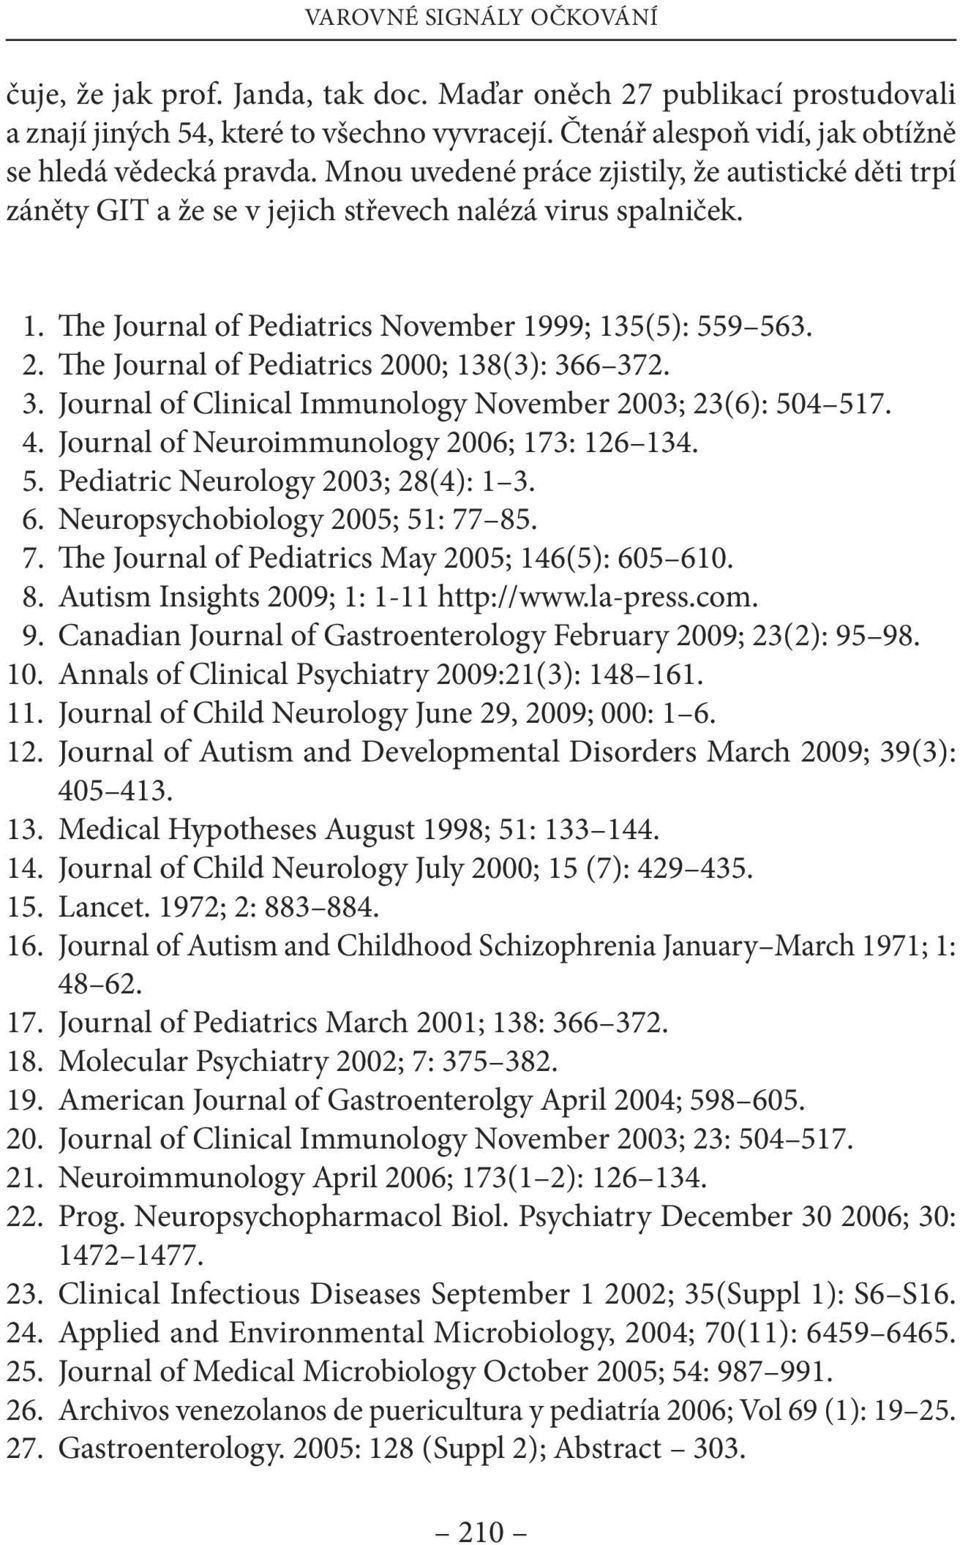 e Journal of Pediatrics 2000; 138(3): 366 372. 3. Journal of Clinical immunology november 2003; 23(6): 504 517. 4. Journal of neuroimmunology 2006; 173: 126 134. 5. Pediatric neurology 2003; 28(4): 1 3.